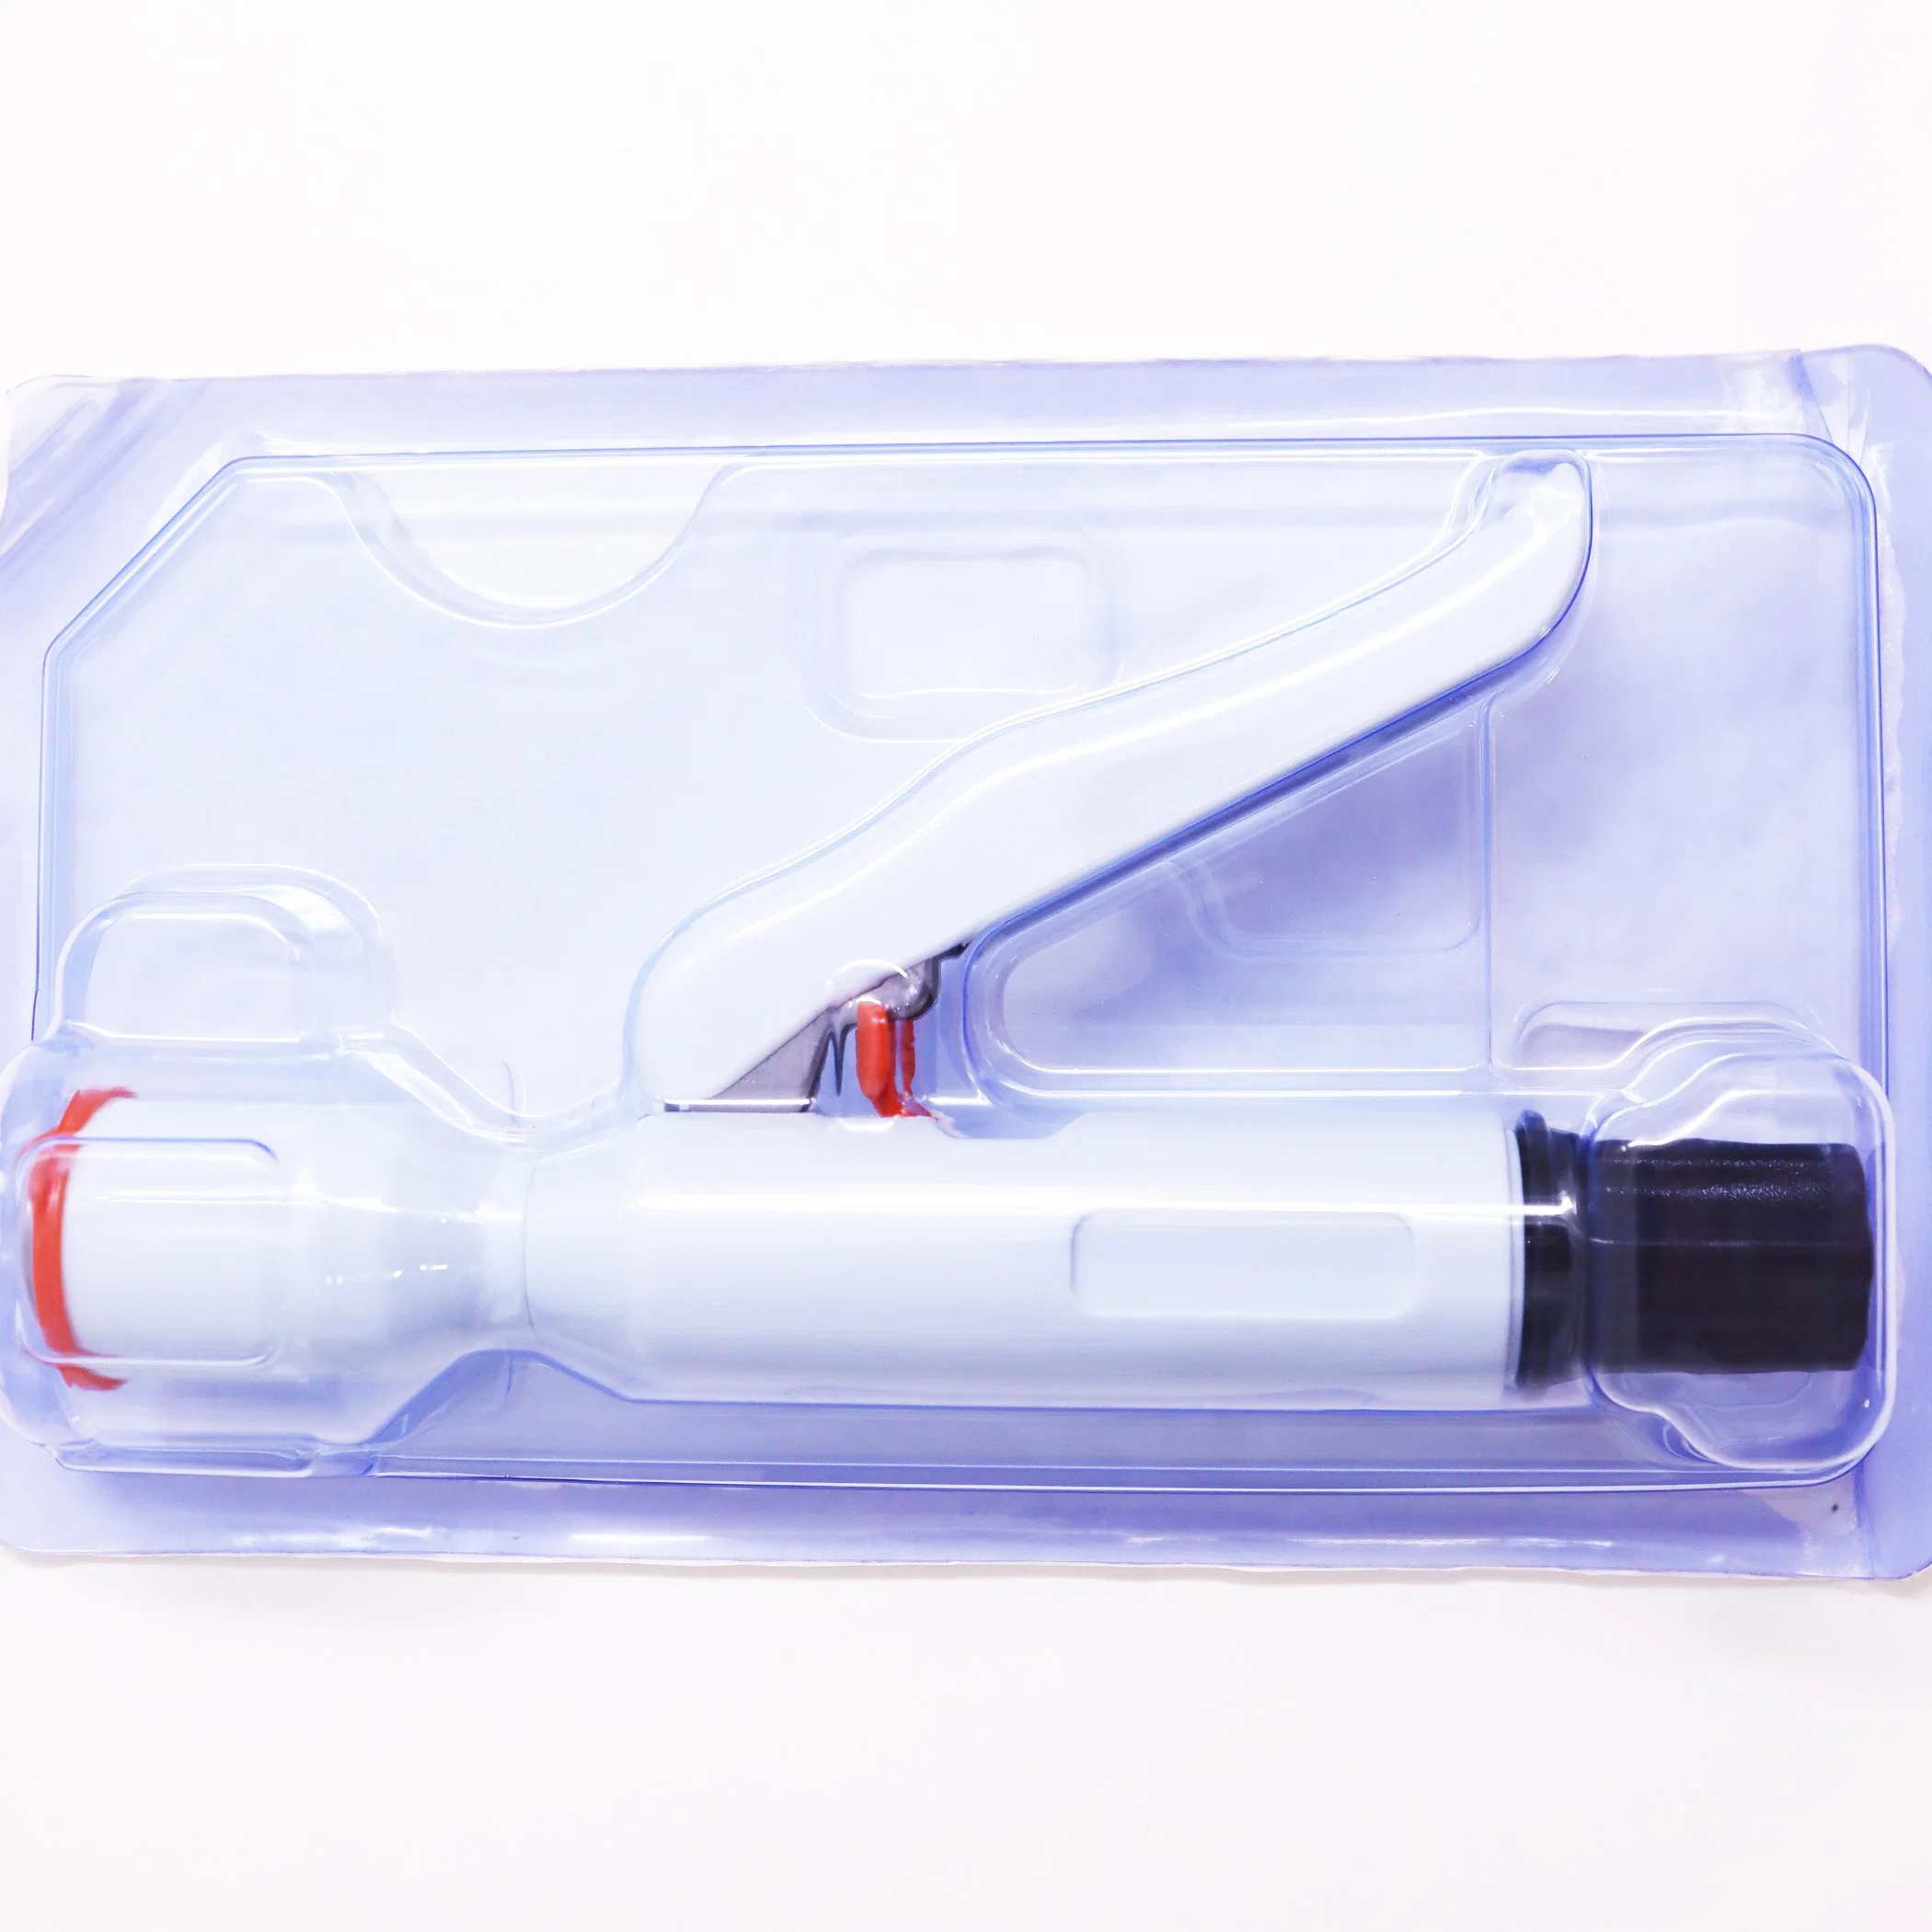 La meilleure qualité dispositif chirurgical de l'agrafeuse de circoncision jetable